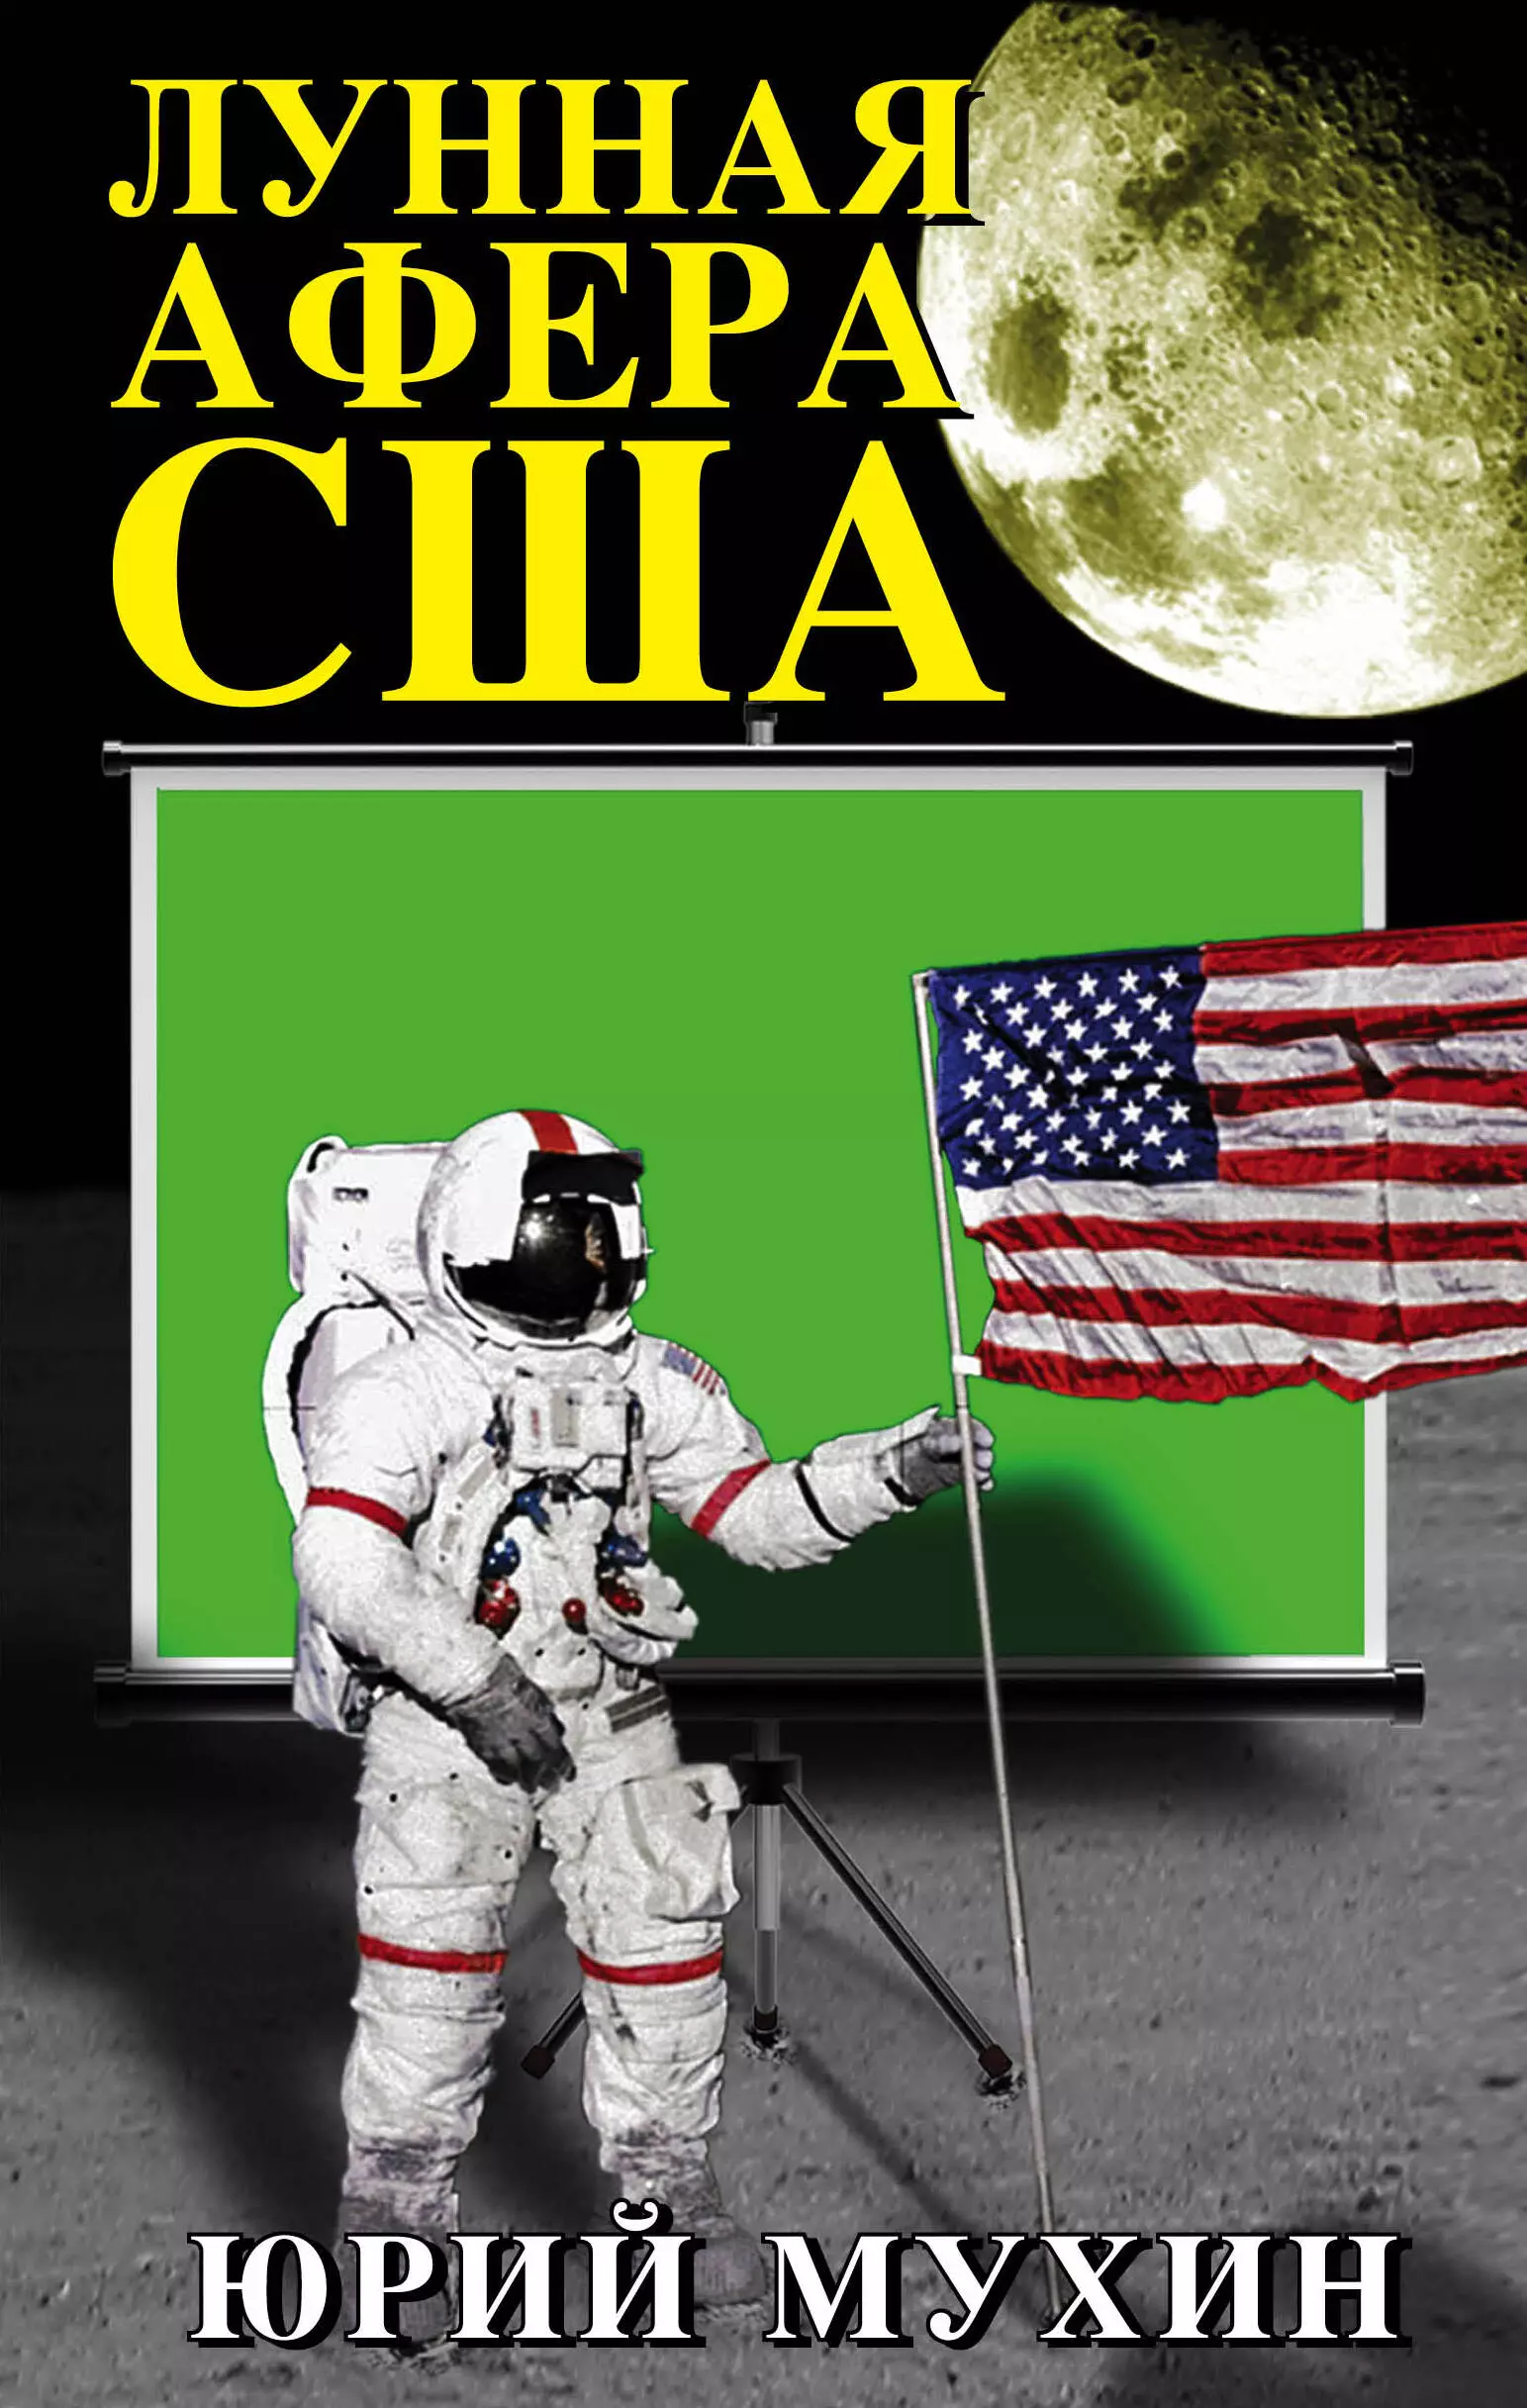 Мухин Юрий Игнатьевич - Лунная афера США